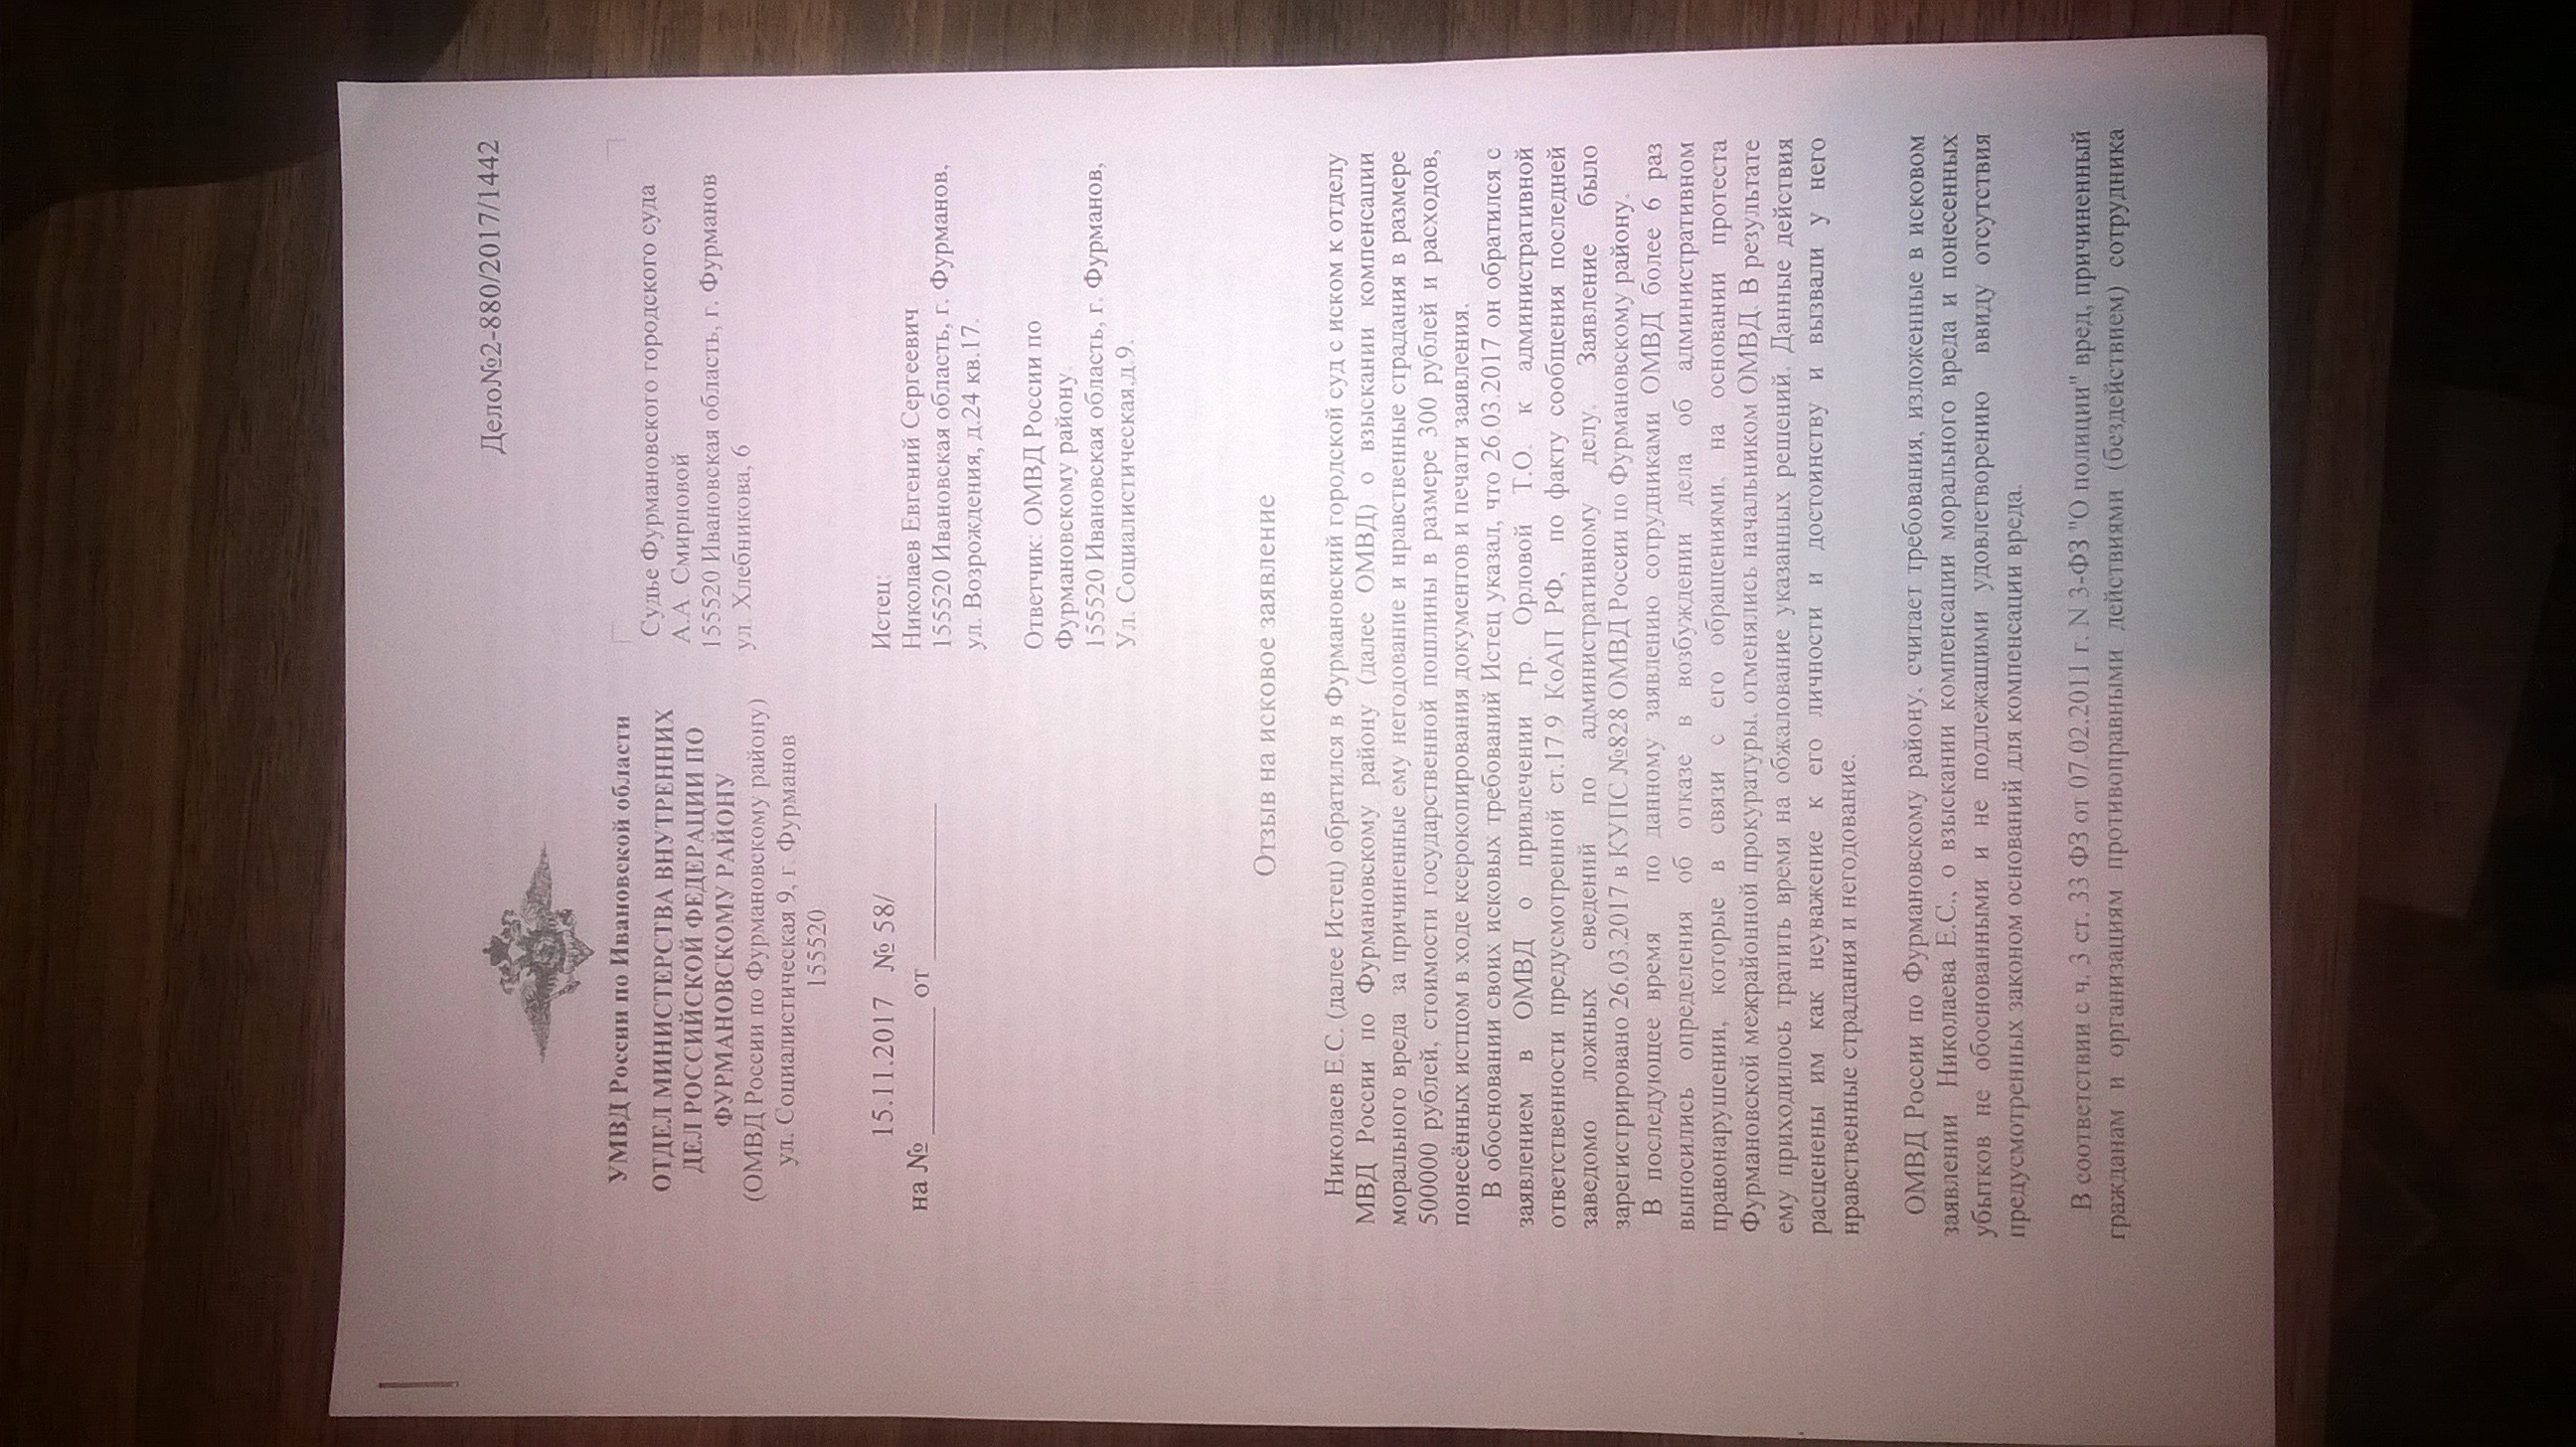 Отзыв на исковое заявление ОМВД по Фурмановскому району(ID документа 134) (Дата документа 15.11.2017) Страница 1